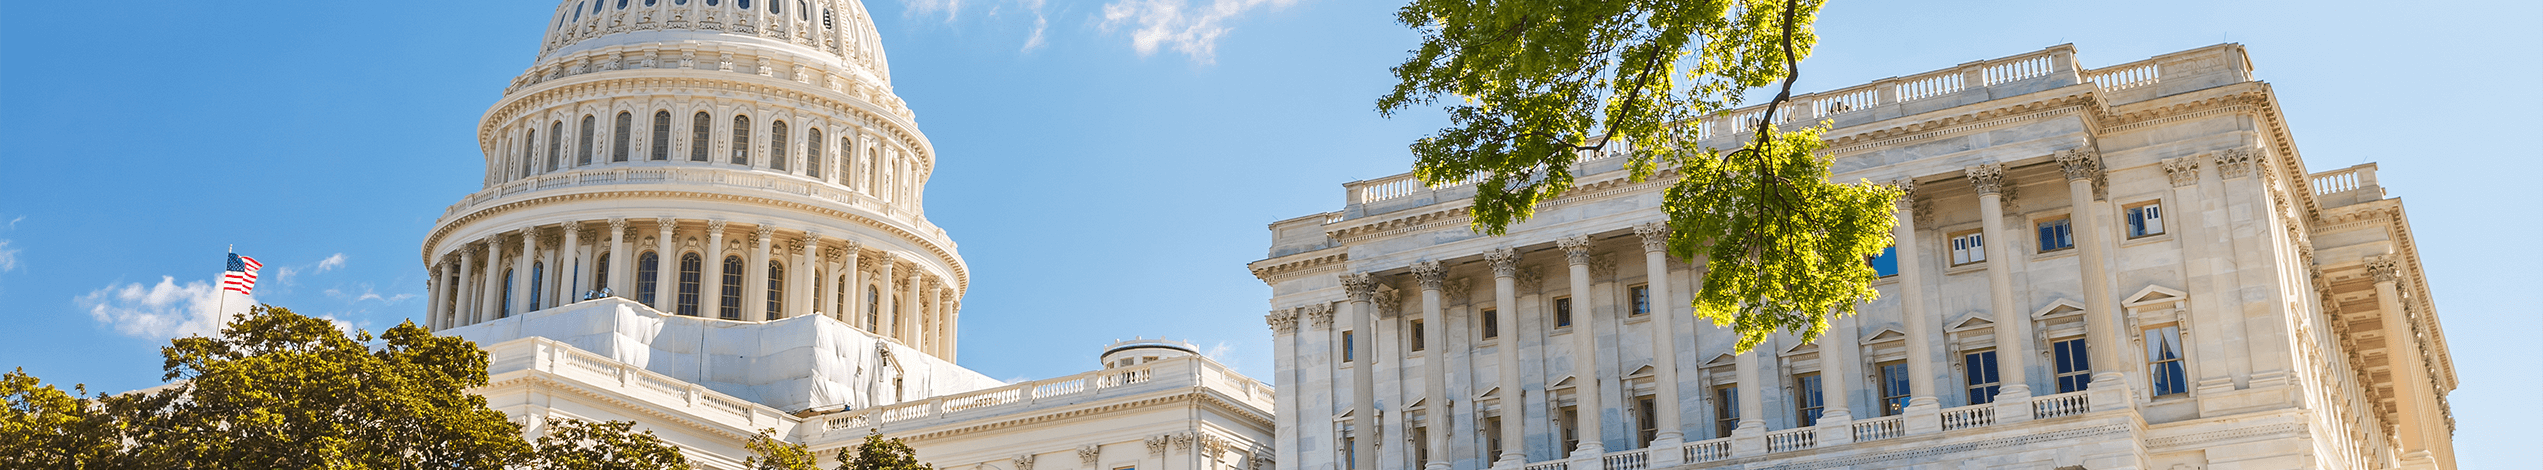 Oplev USA's politiske centrum på din rejse til Washington DC